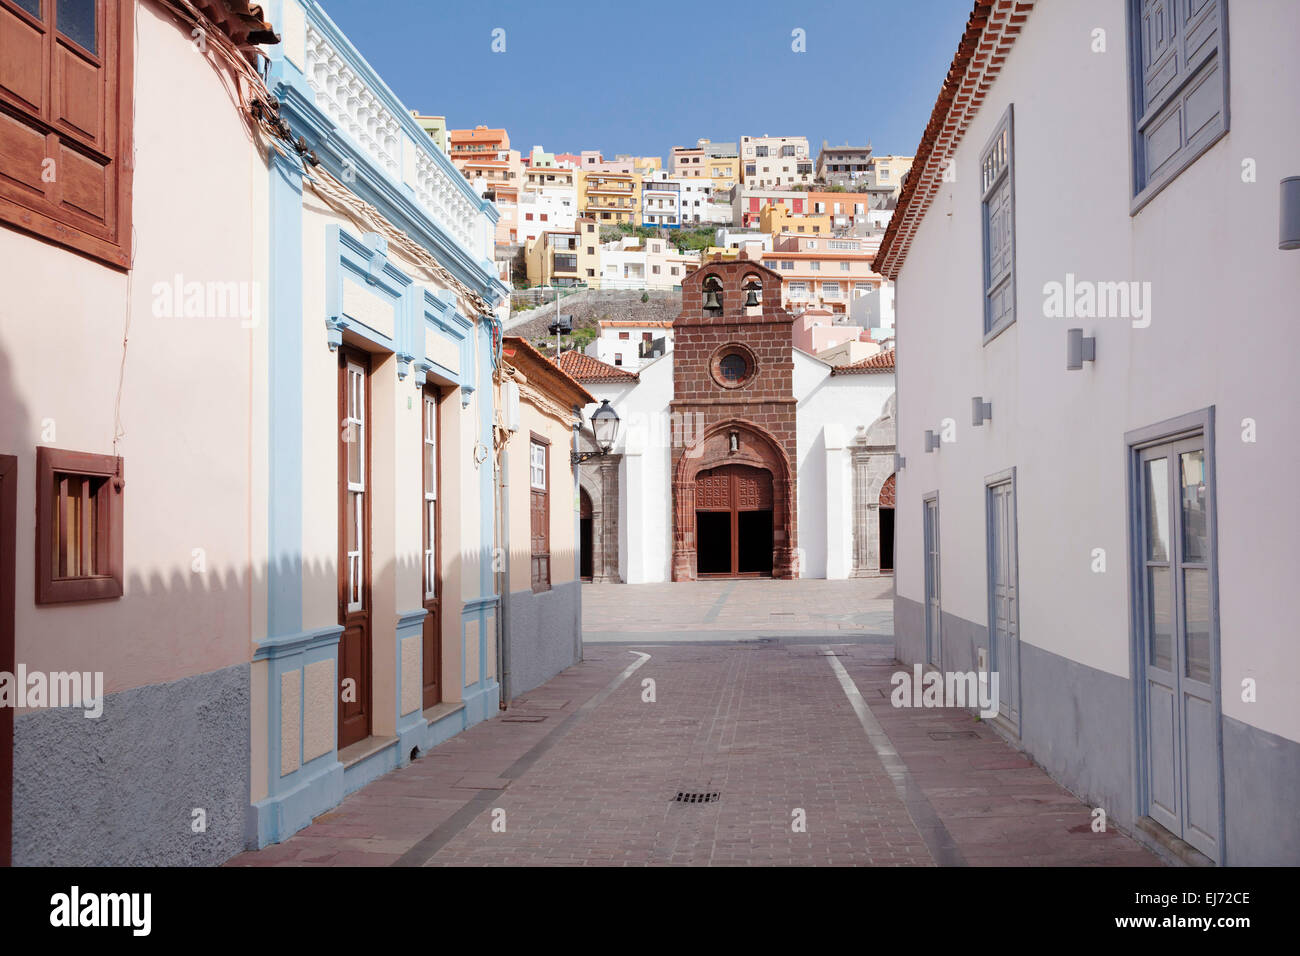 Church of Nuestra Senora de la Asuncion, La Gomera, Canary Islands, Spain Stock Photo